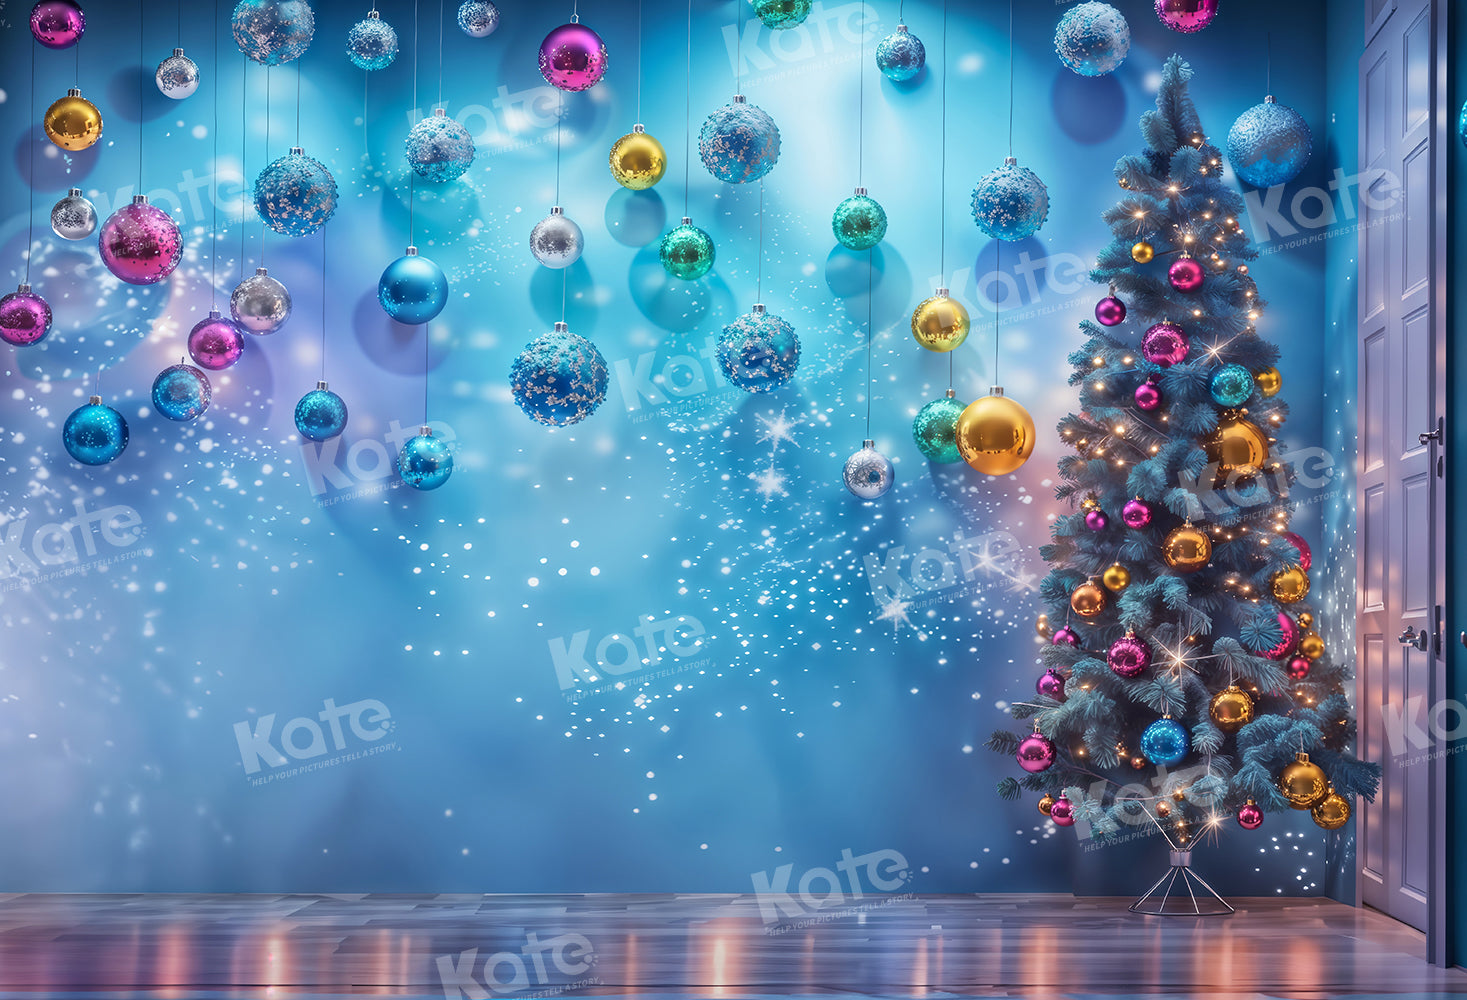 Kate Sapin de Noël Brillant Bleu Toile de fond pour la photographie